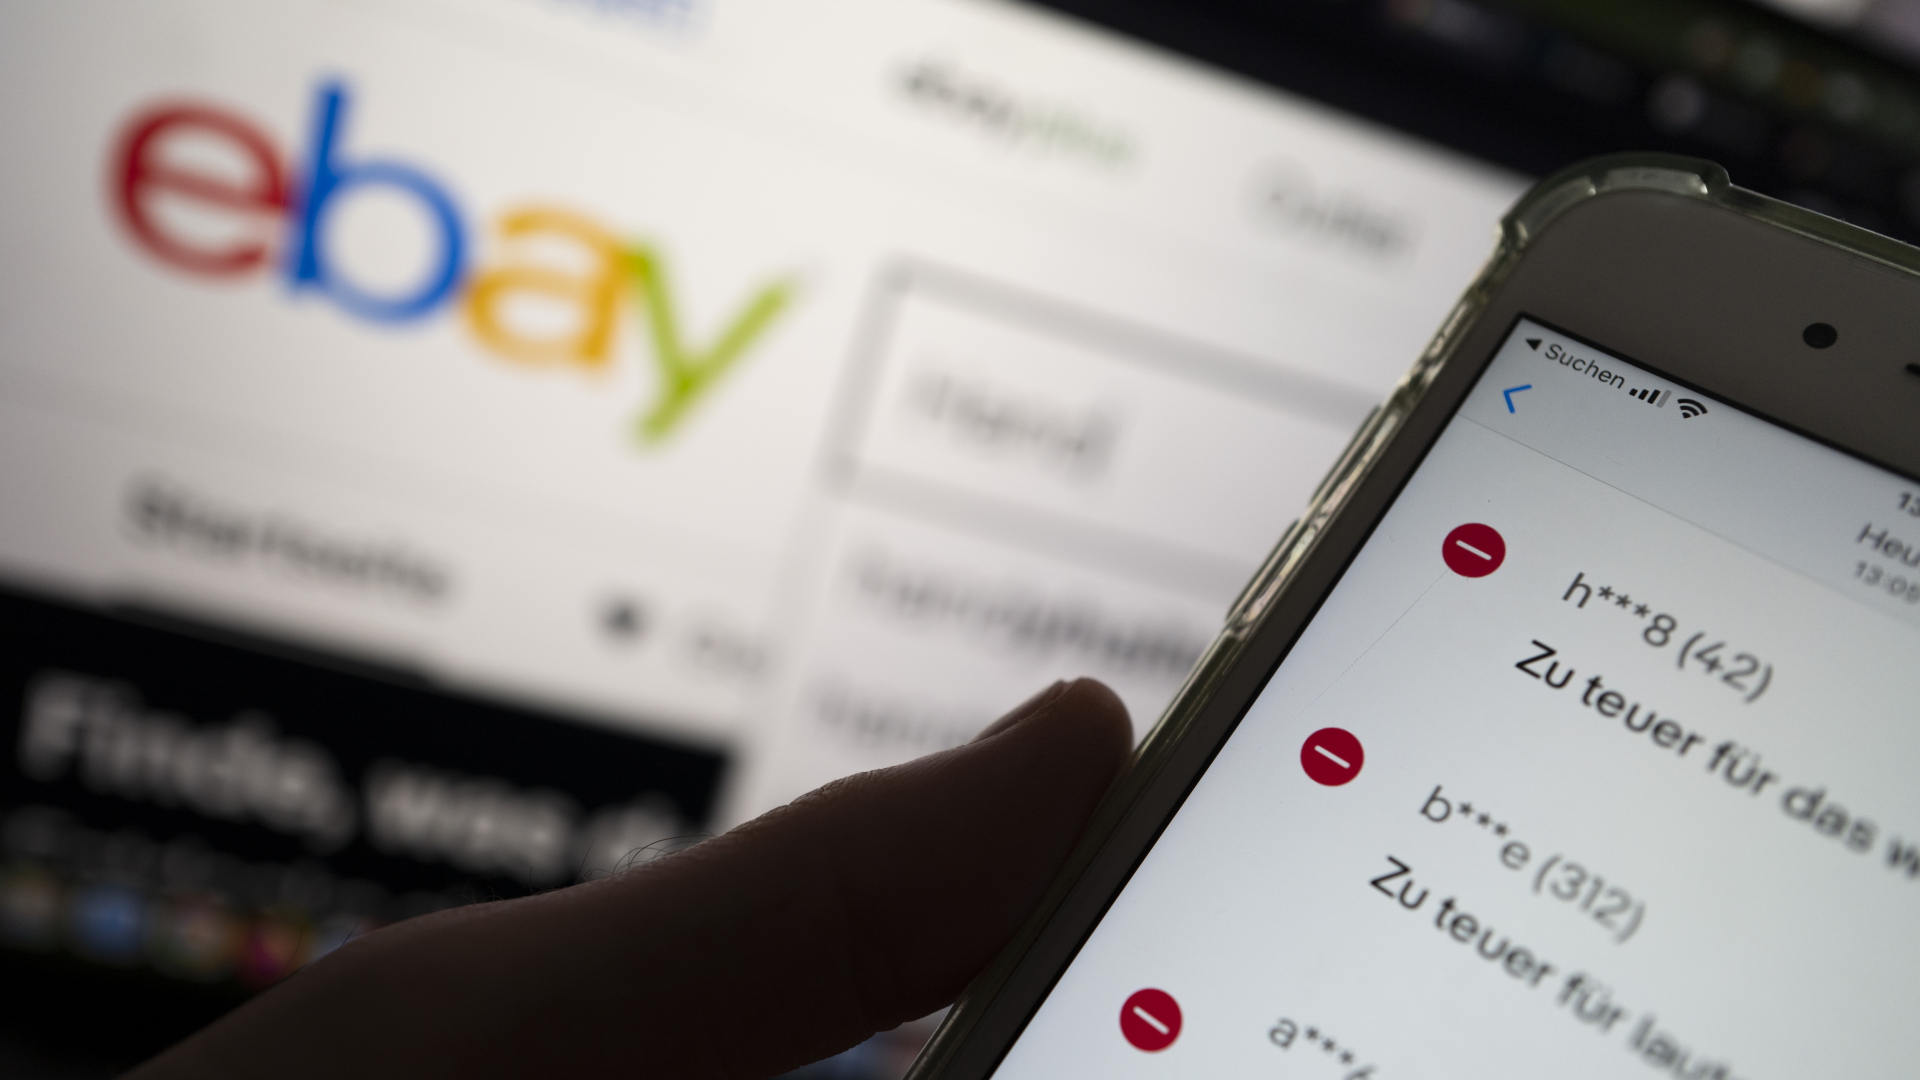 Auf einem Smartphone in der Ebay-App werden negative Bewertungen eines Verkäufers angezeigt, während im Hintergrund das Logo der Verkaufsplattform Ebay zu sehen ist.  | dpa